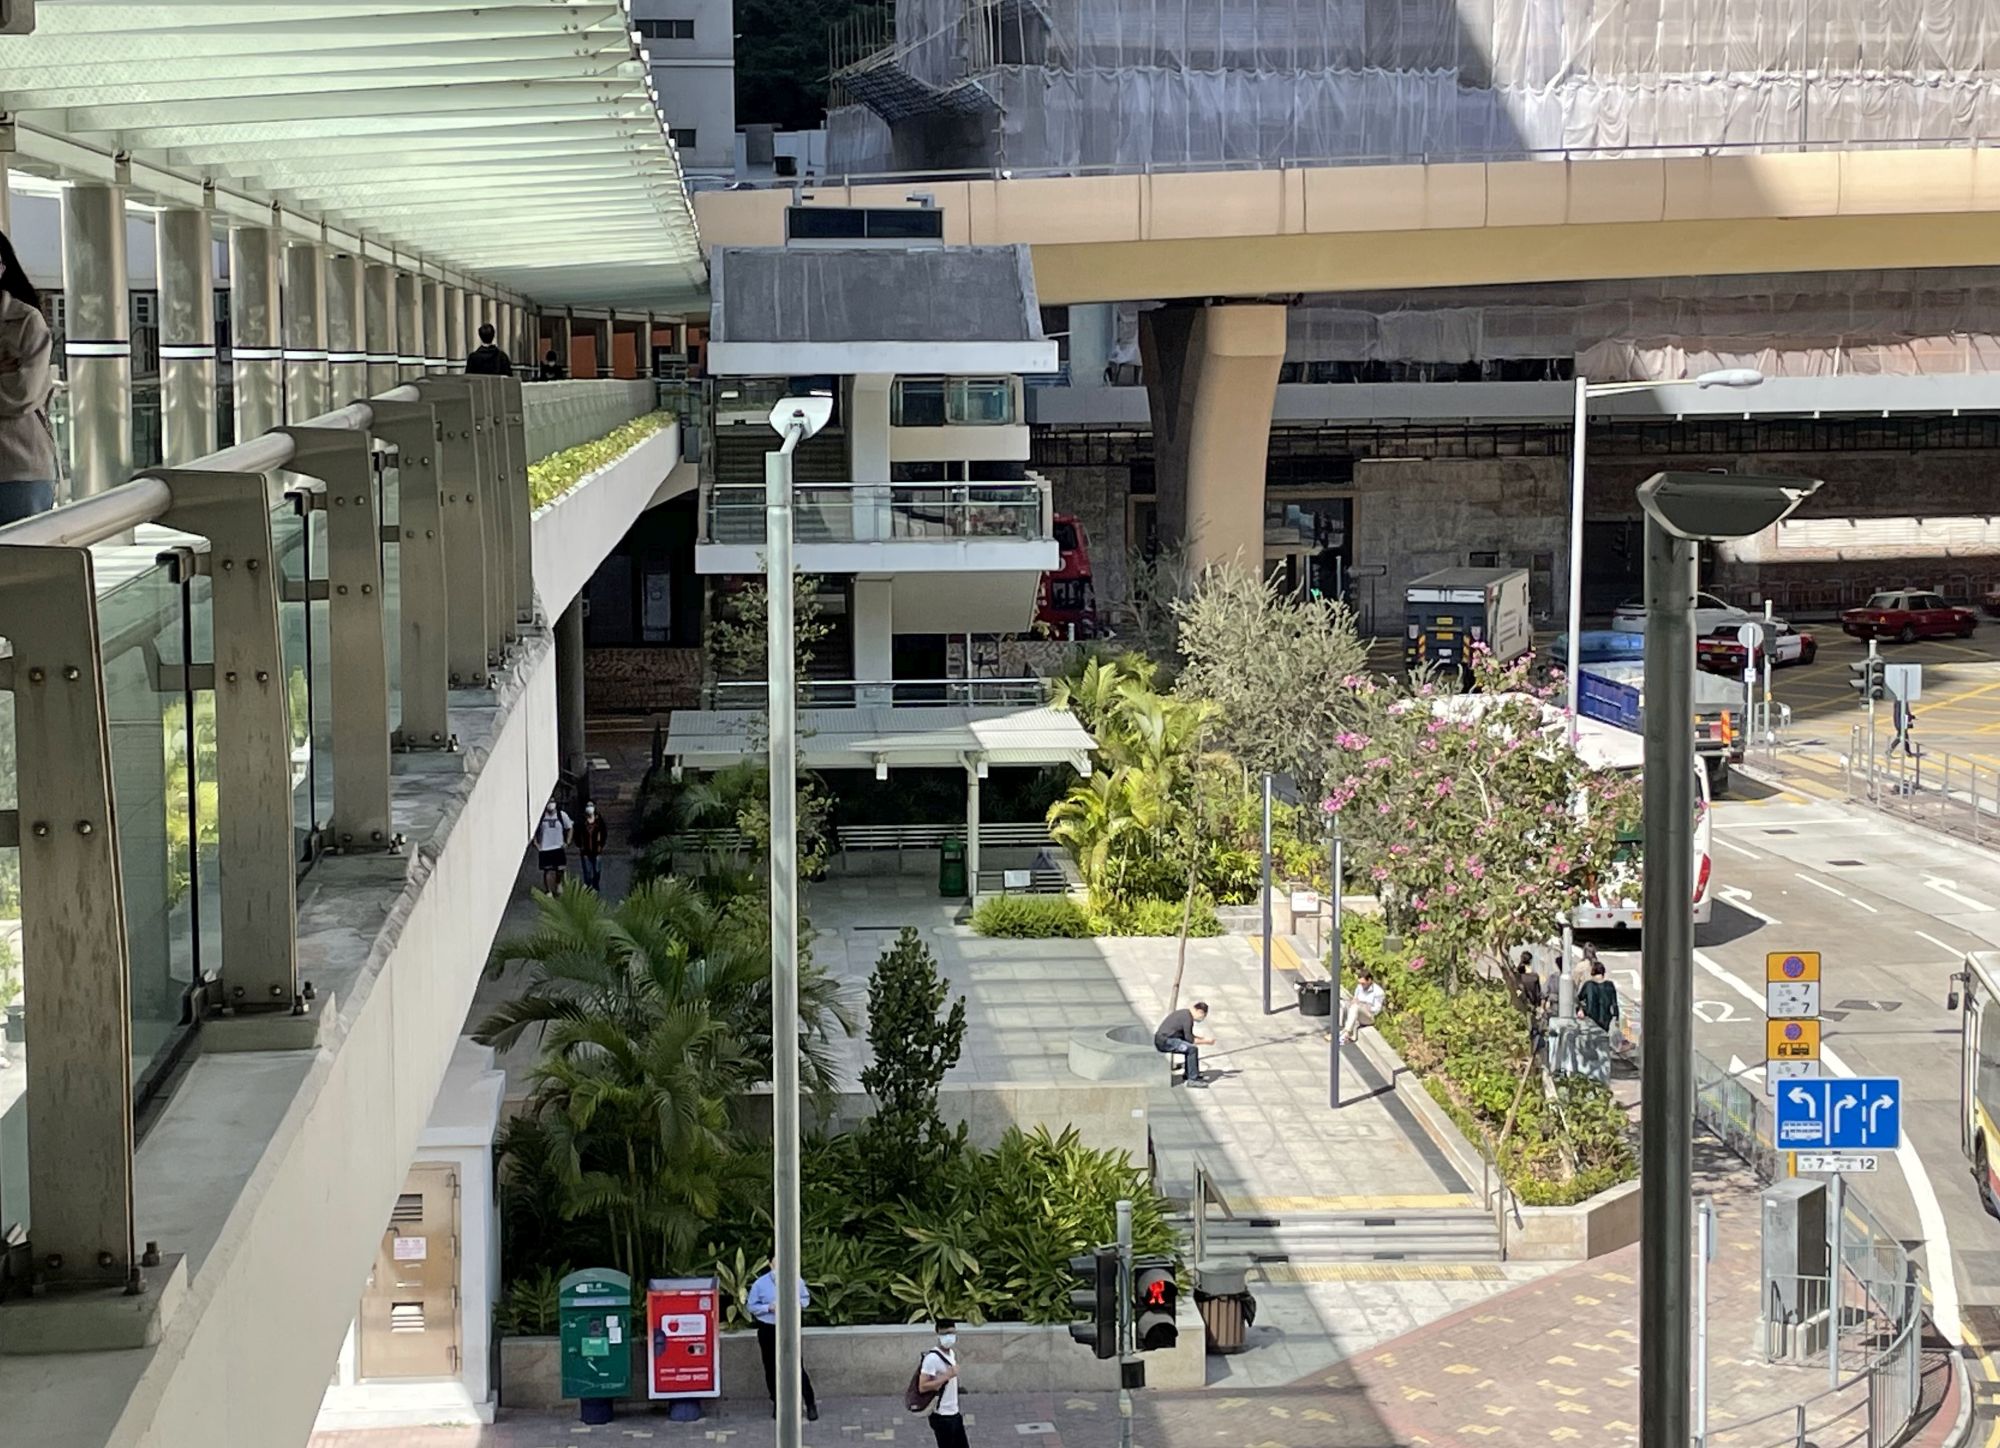 「黄竹坑绿色联机」是一个地方营造项目，利用绿色走廊的概念，透过一系列休憩处和行人设施，连接黄竹坑站和香港仔郊野公园。项目包括改善图中的南朗山道休憩处。